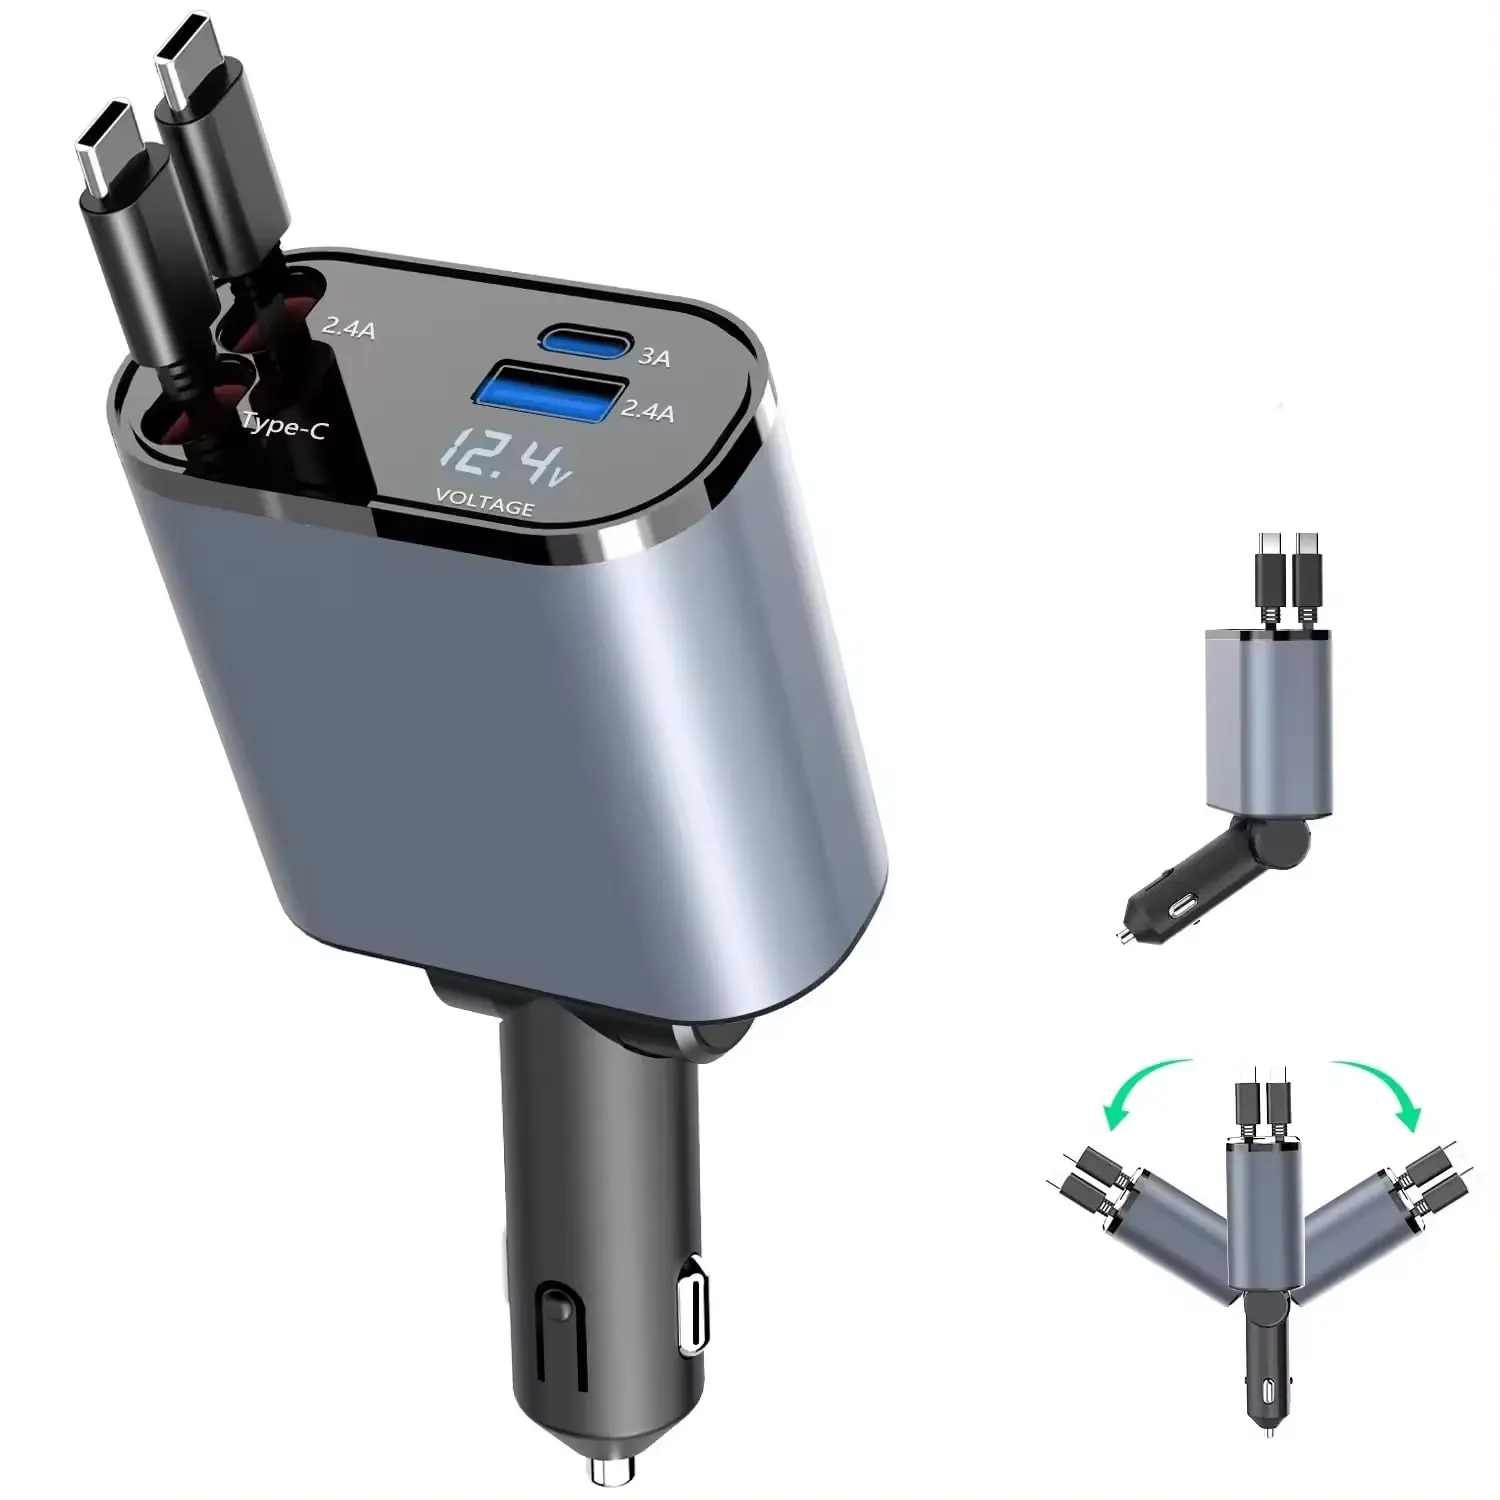 Carregador de carro retrátil USB rápido C Display digital LED 120W 4 em 1 Adaptador Rápido 2 Portas Tipo C PD Carregador de estação de carregamento